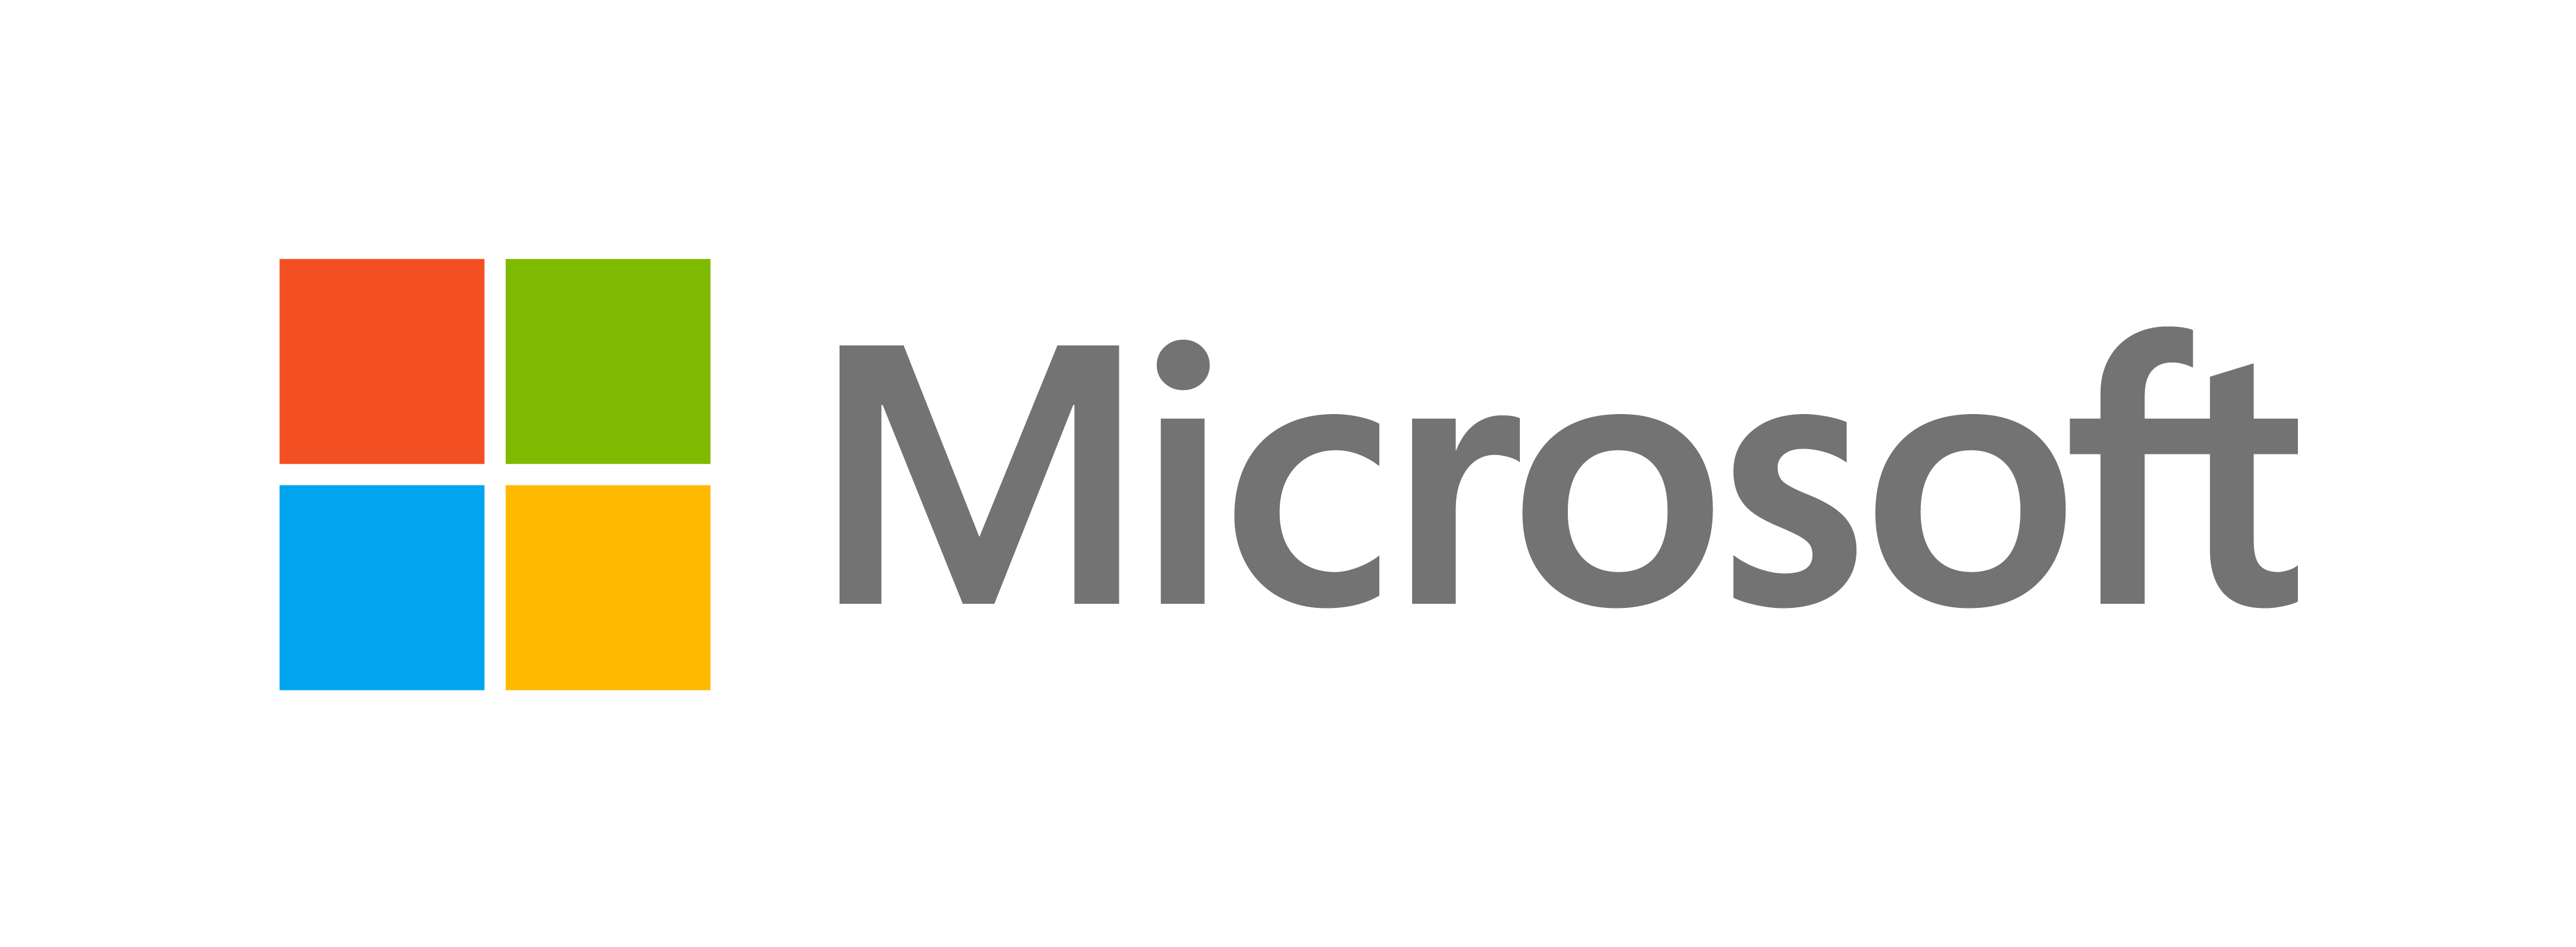 微软推出新外观 - 微软官方博客